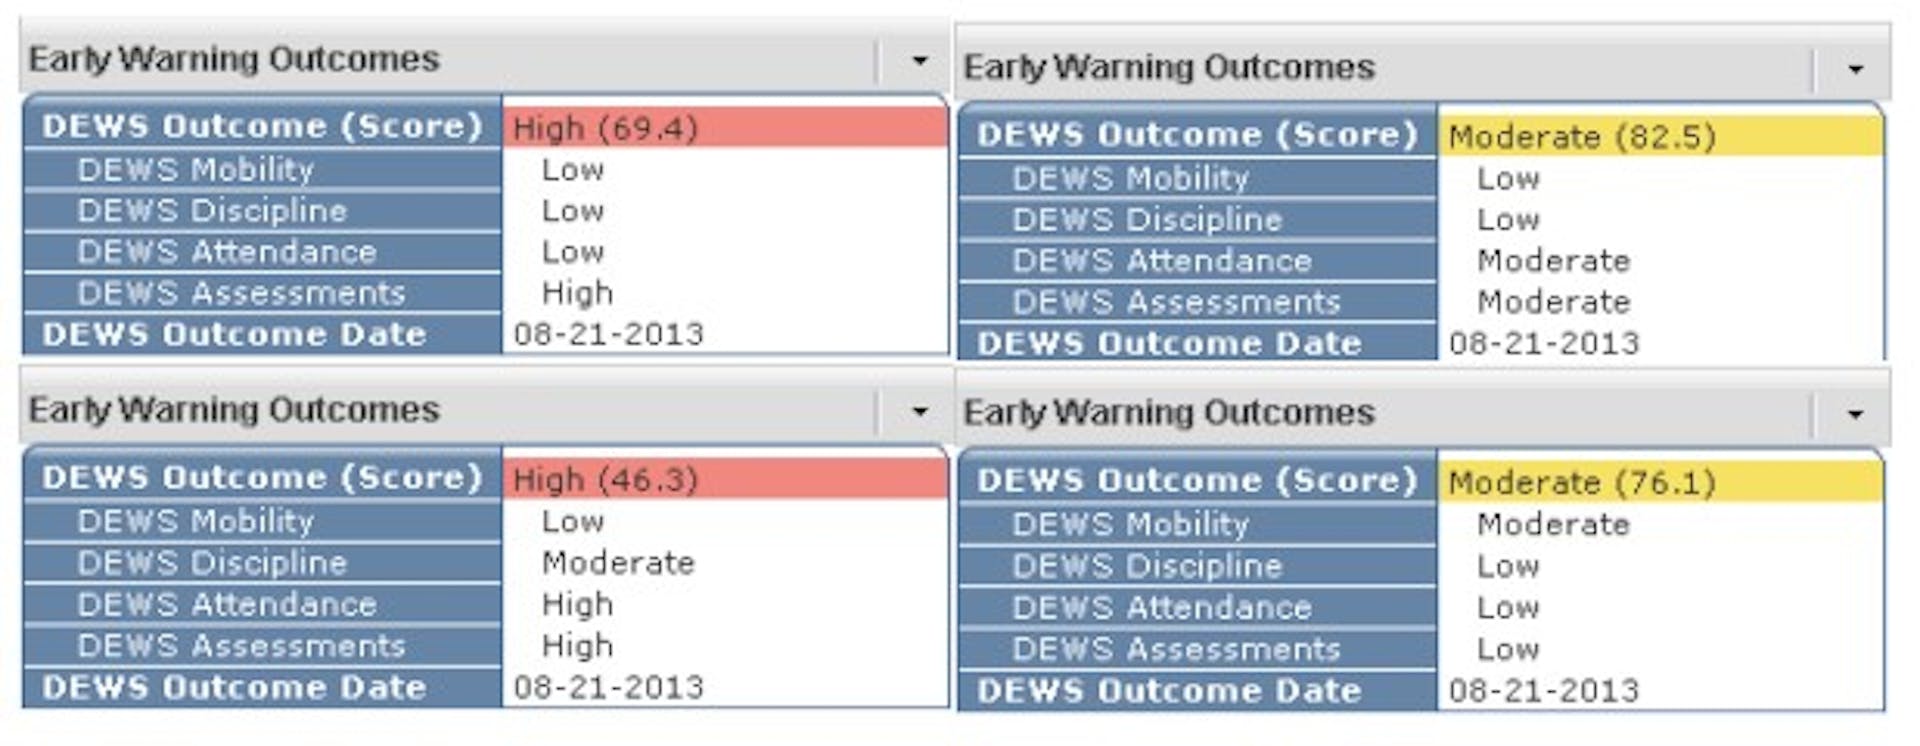 Capture d'écran de la façon dont les prédictions DEWS des étudiants sont affichées dans le système d'information à l'échelle de l'État. Deux prédictions sont surlignées en rouge et étiquetées « Élevée », deux prédictions sont étiquetées en jaune et étiquetées « Modérée ».